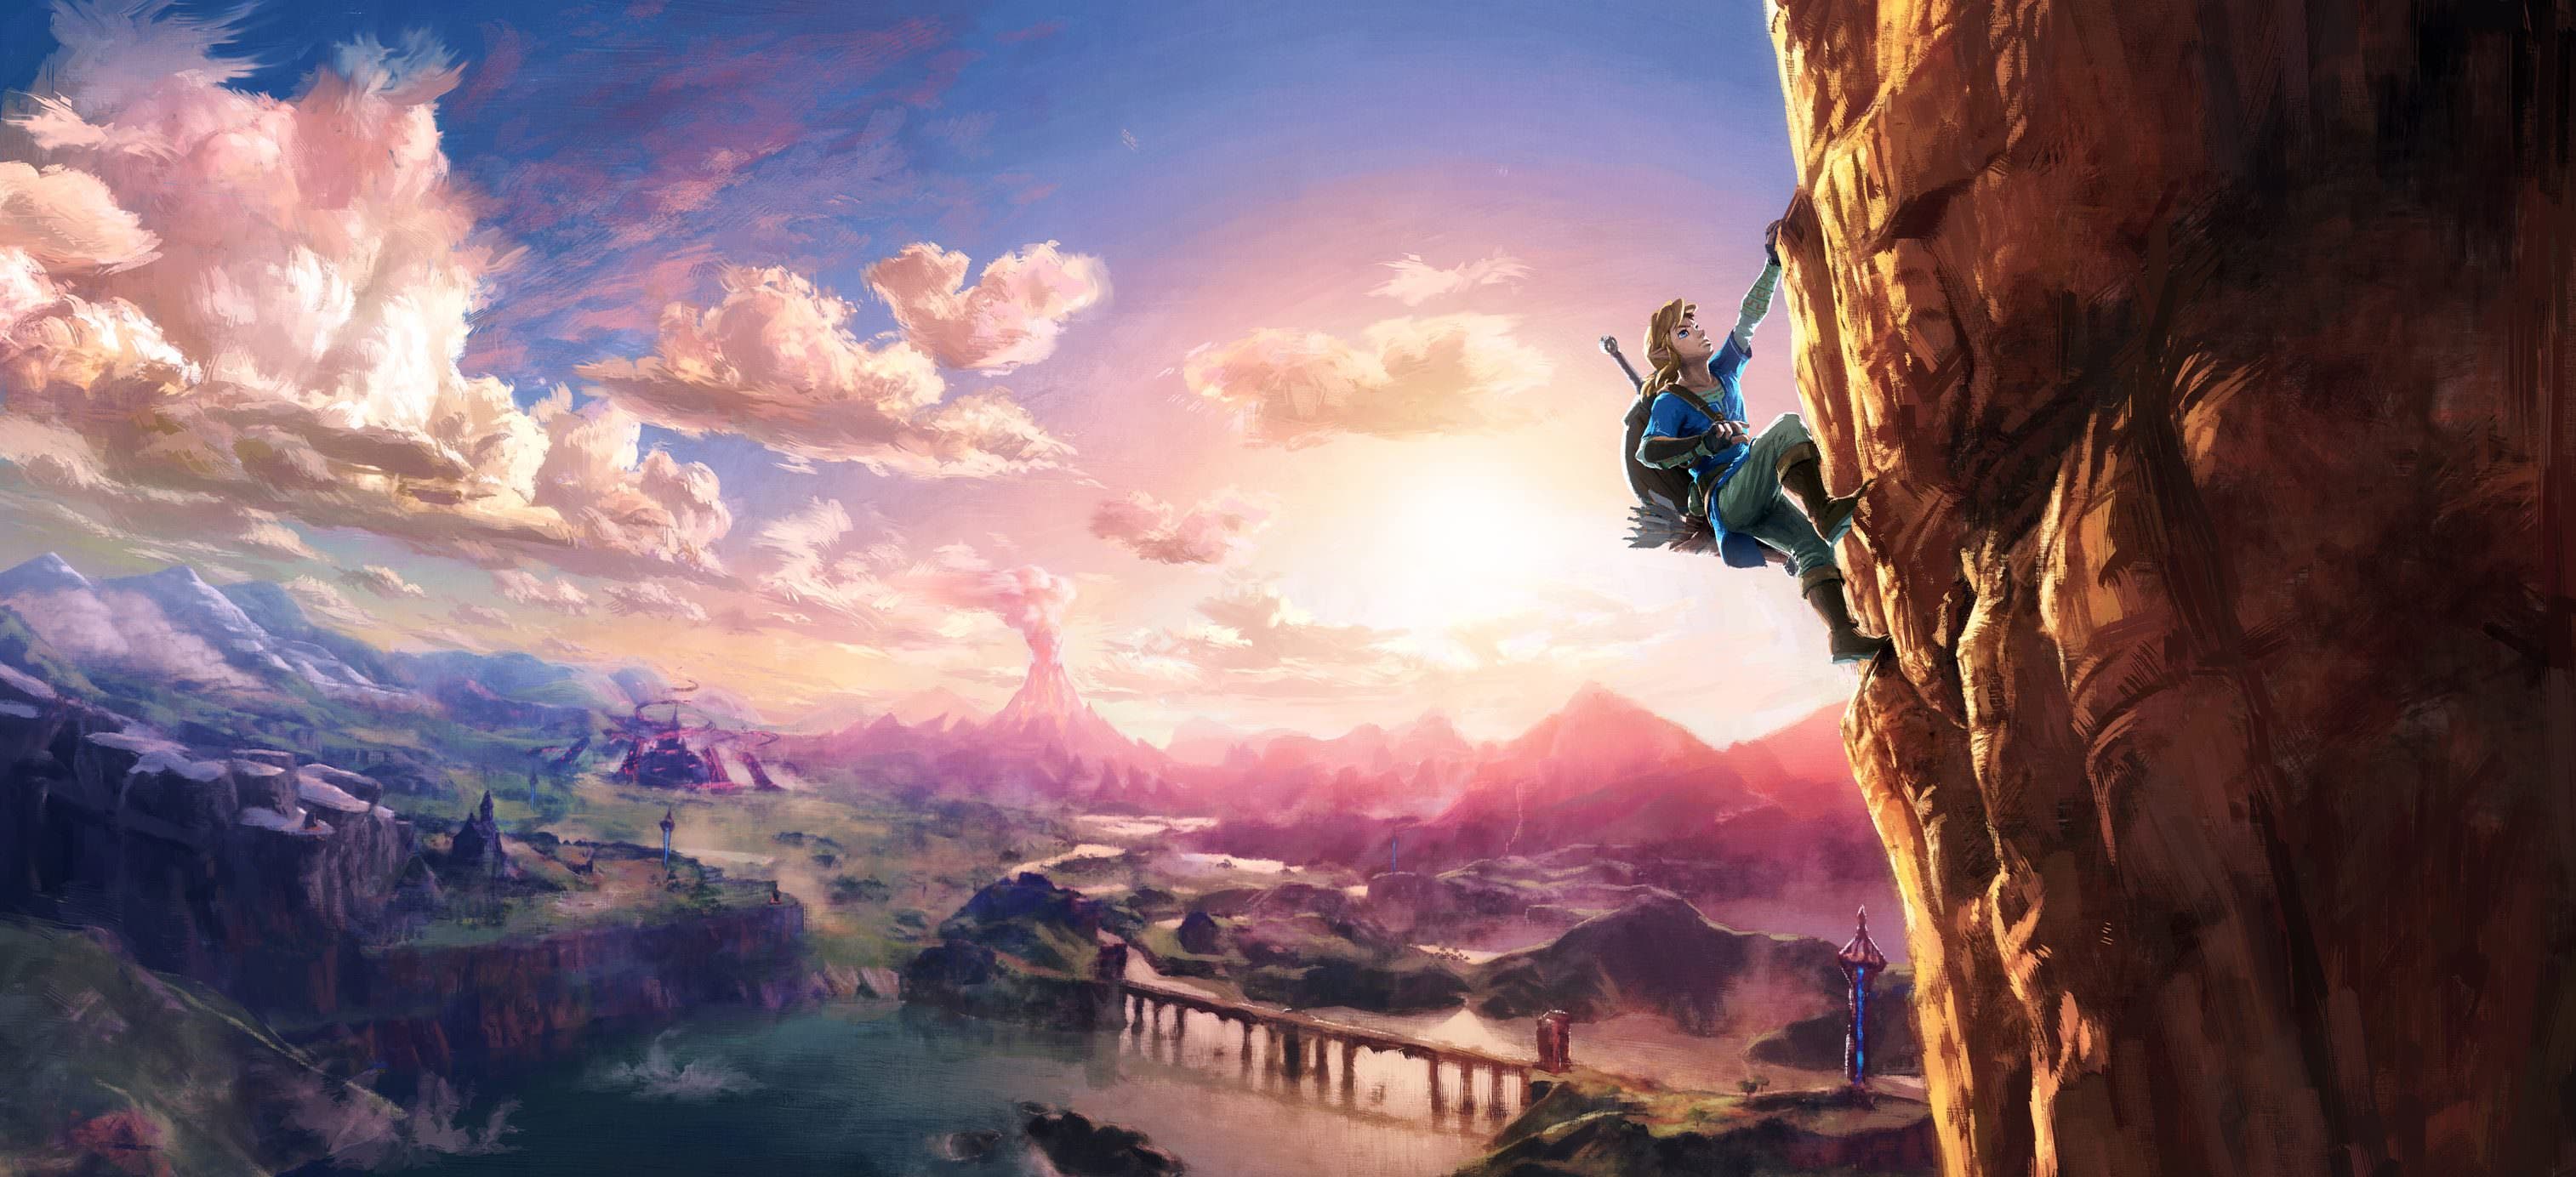 [Act.] Un nuevo artwork de ‘Zelda Wii U/NX’ sale a la luz